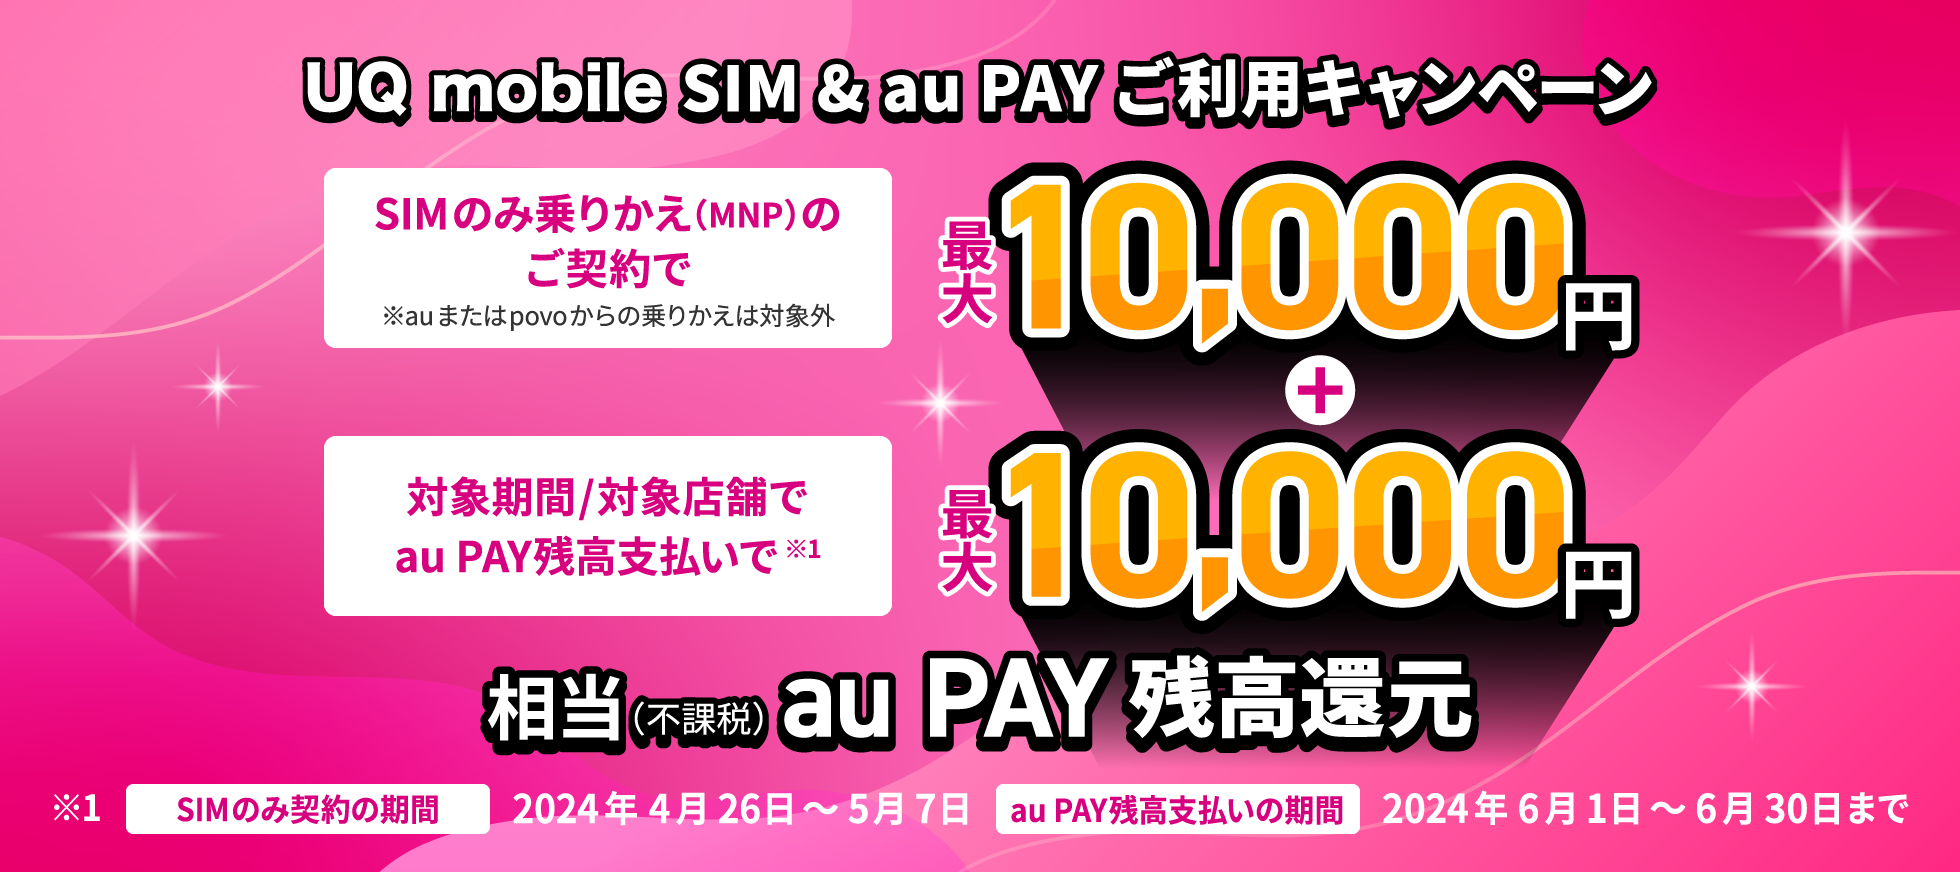 UQ mobile SIM & au PAY ご利用キャンペーン